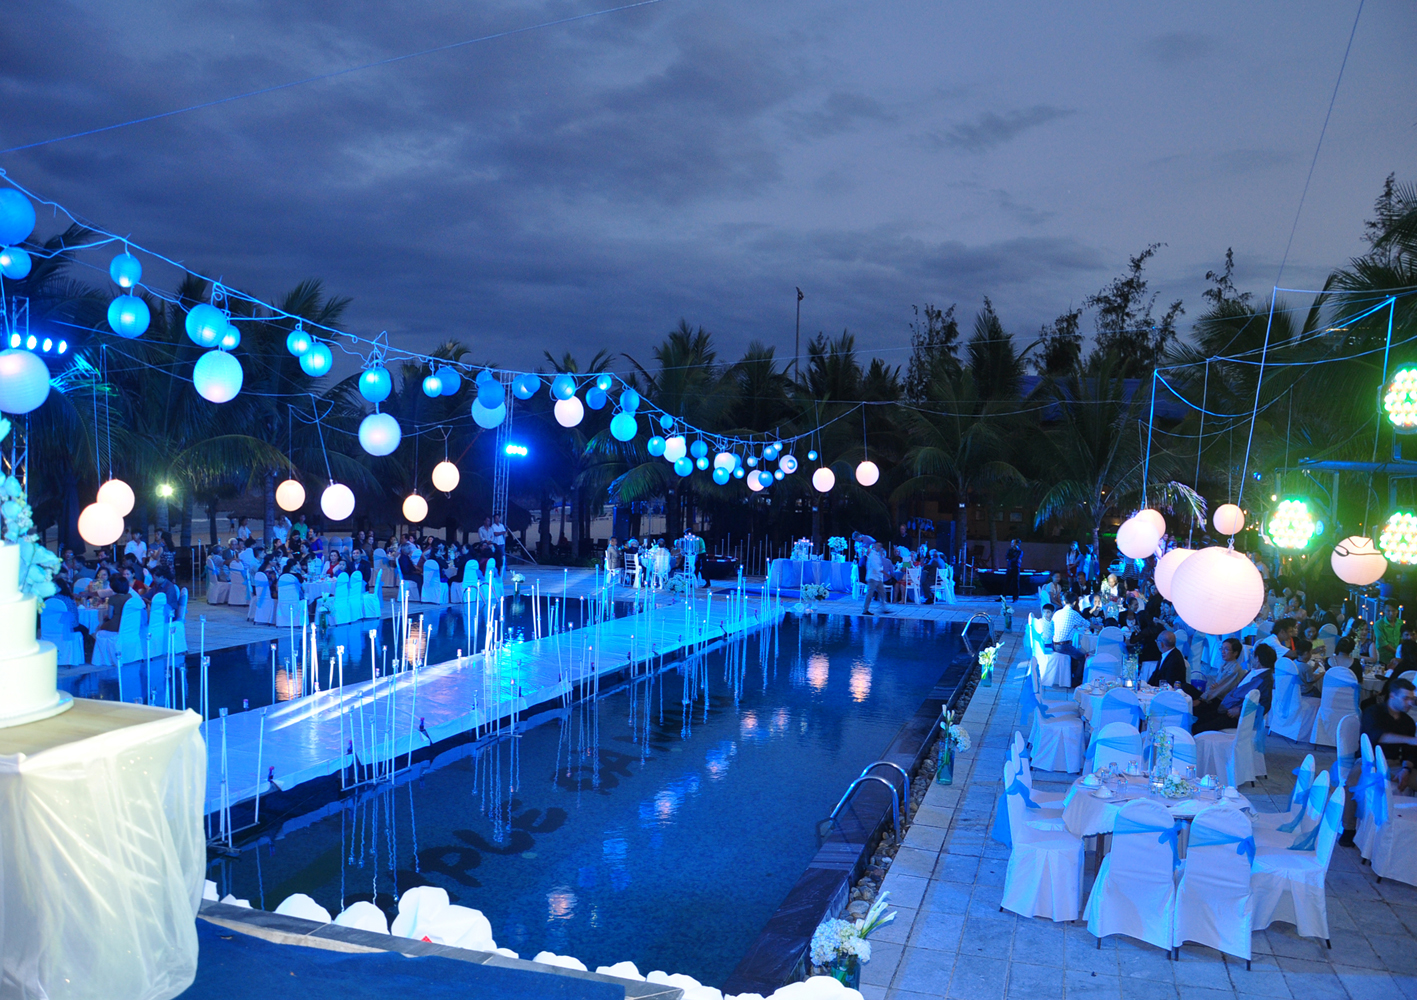 Trung tâm hội nghị tiệc cưới ở Đà Nẵng 